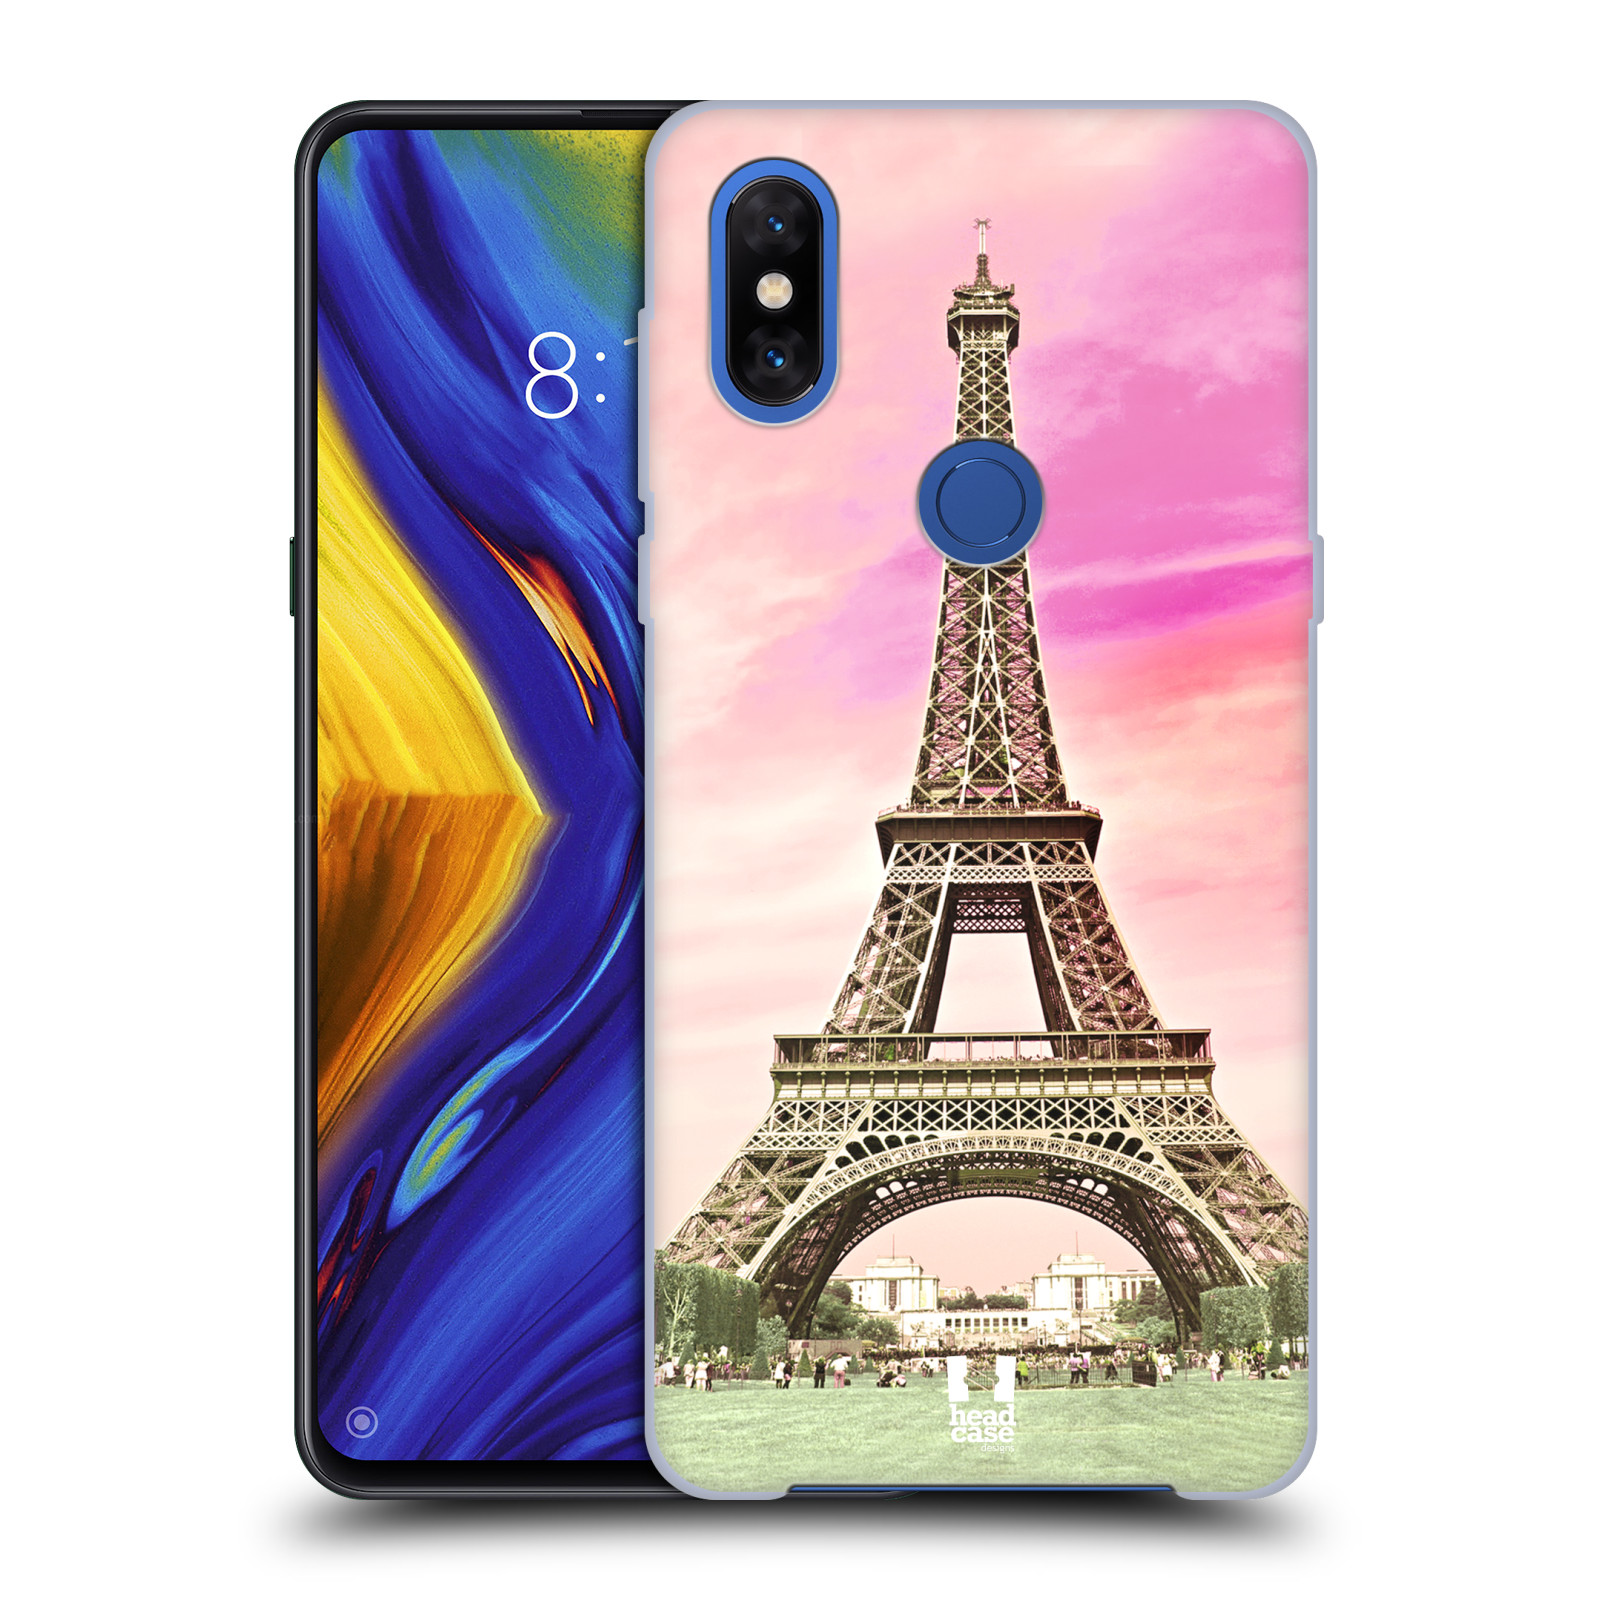 Pouzdro na mobil Xiaomi Mi Mix 3 - HEAD CASE - historická místa Eiffelova věž Paříž